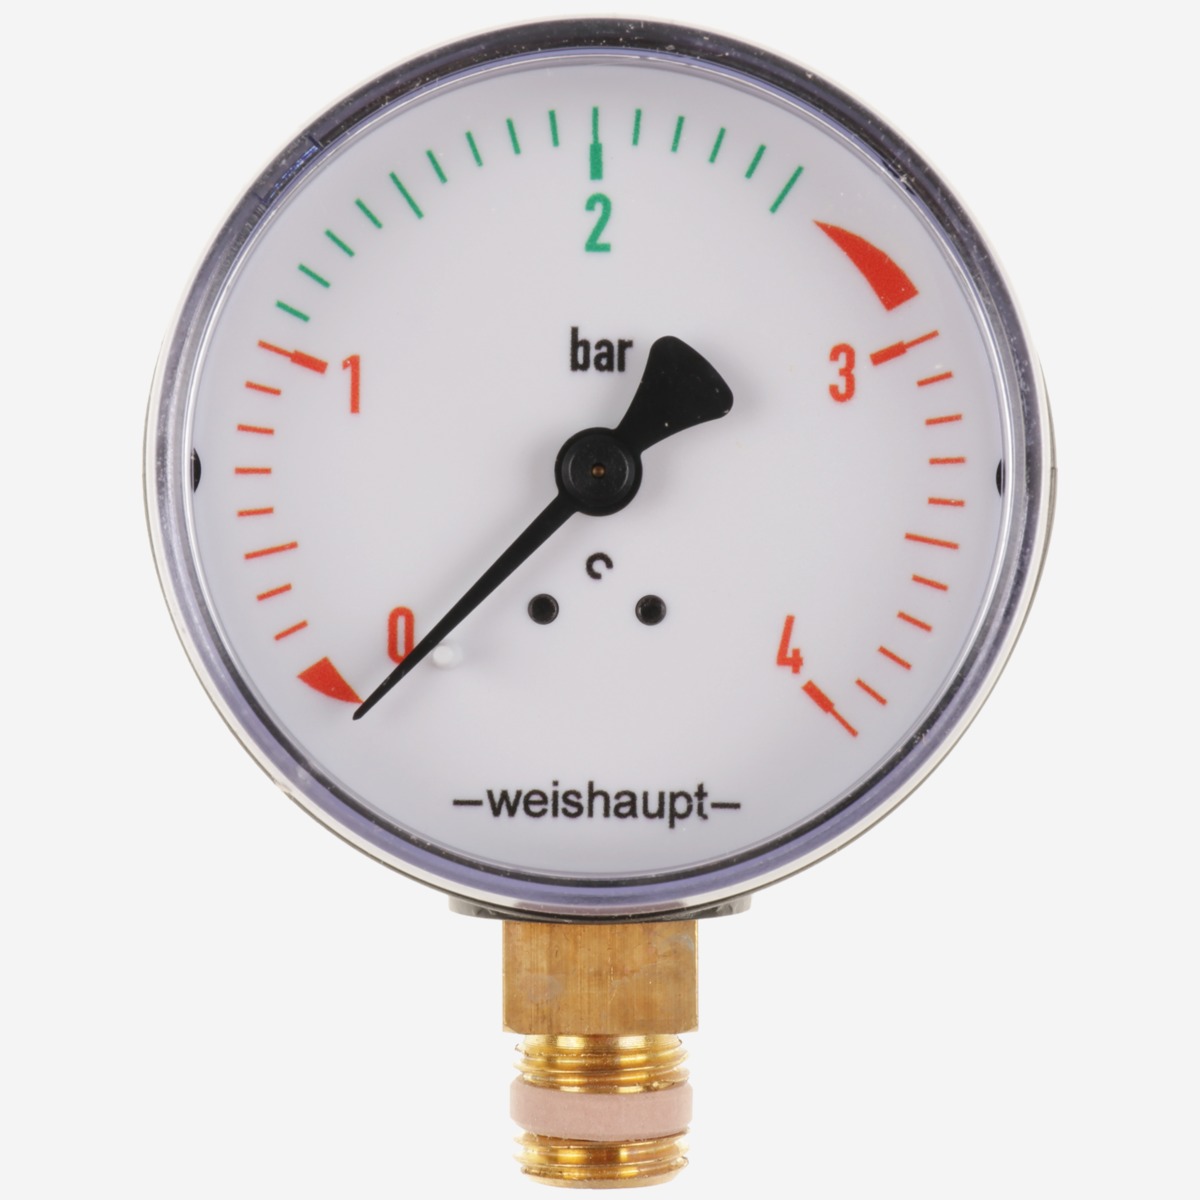 Weishaupt Manometer 0-4 bar  G 1/4 40900006842